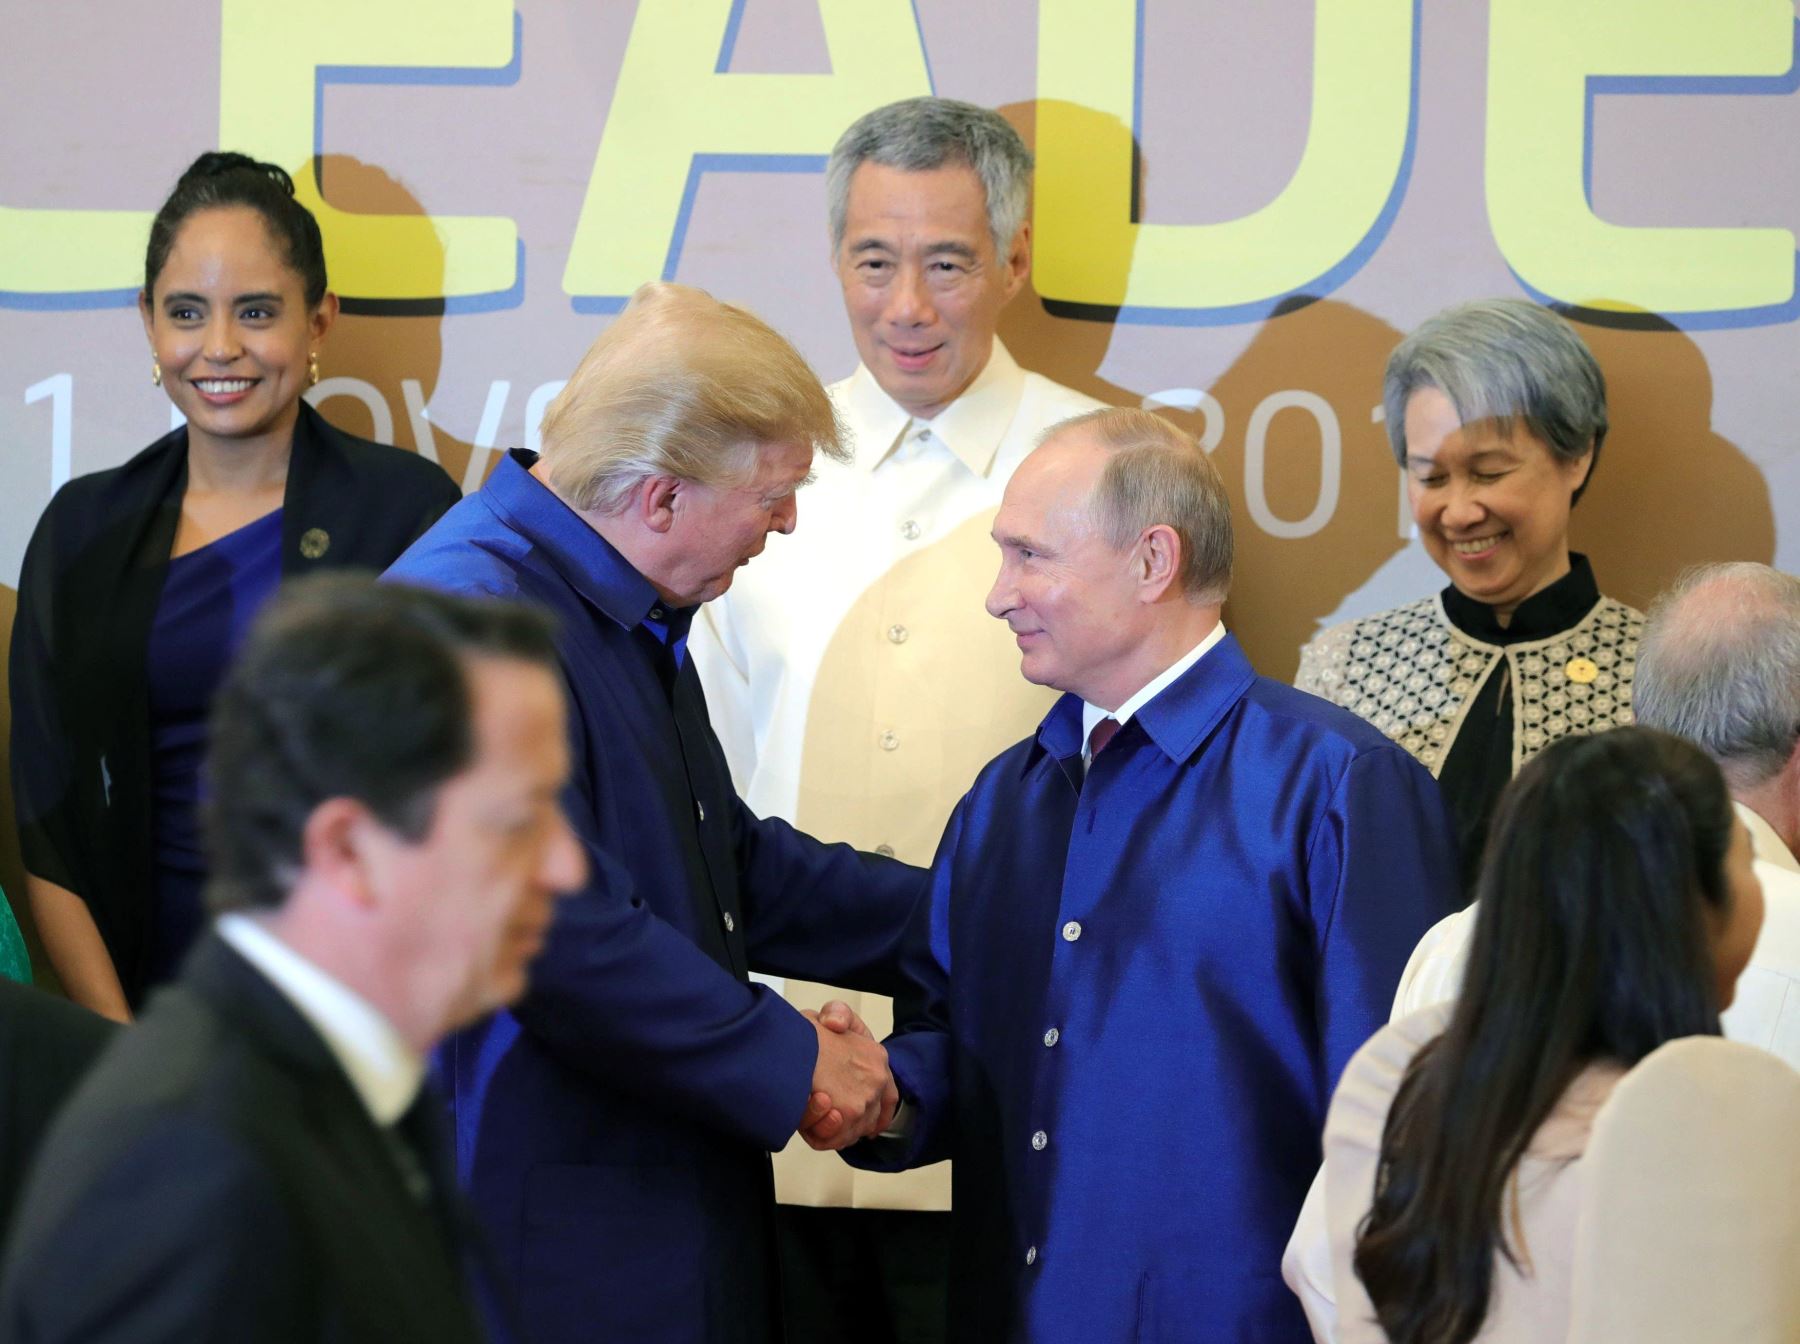 Cumbre de Líderes APEC 2017. Presidentes de Rusia, Vladimir Putin, y de Estados Unidos, Donald Trump. Foto: Efe.